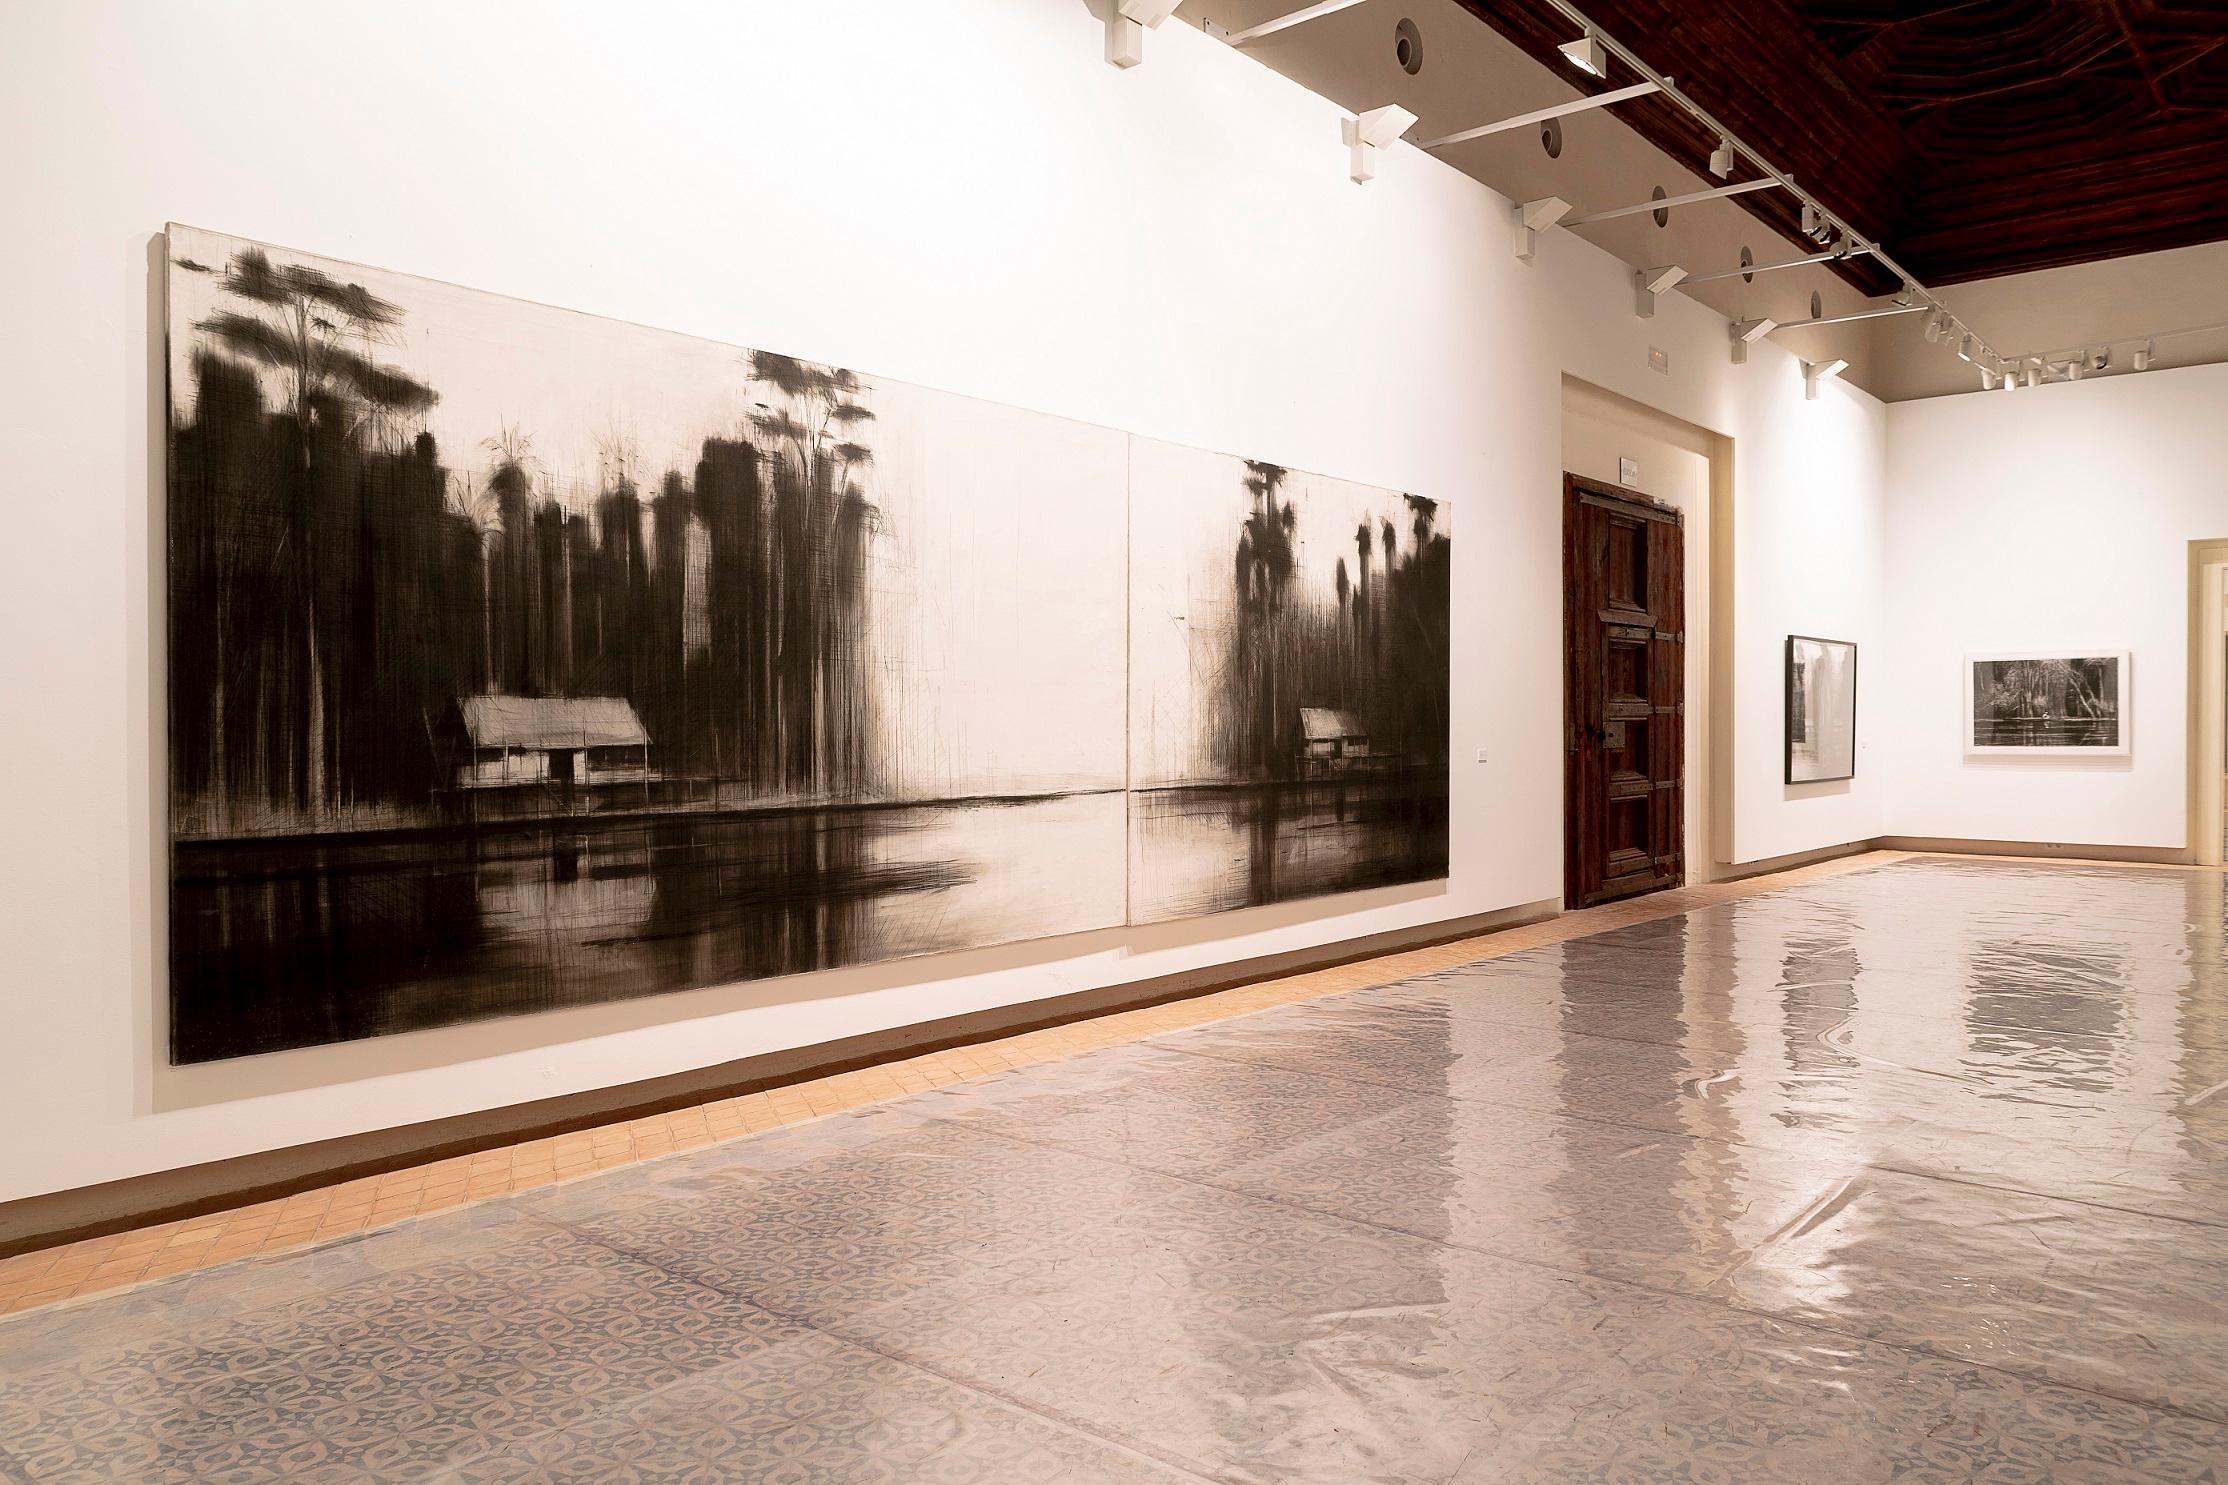 Crayon et fusain sur toile, diptyque composé de deux panneaux 212 cm x 282 cm (à droite) et 212 cm x  374 cm (à gauche).
Selvas Negras #1 est un dessin à grande échelle de l'artiste contemporain espagnol Calo Carratalá, extrait de la série 